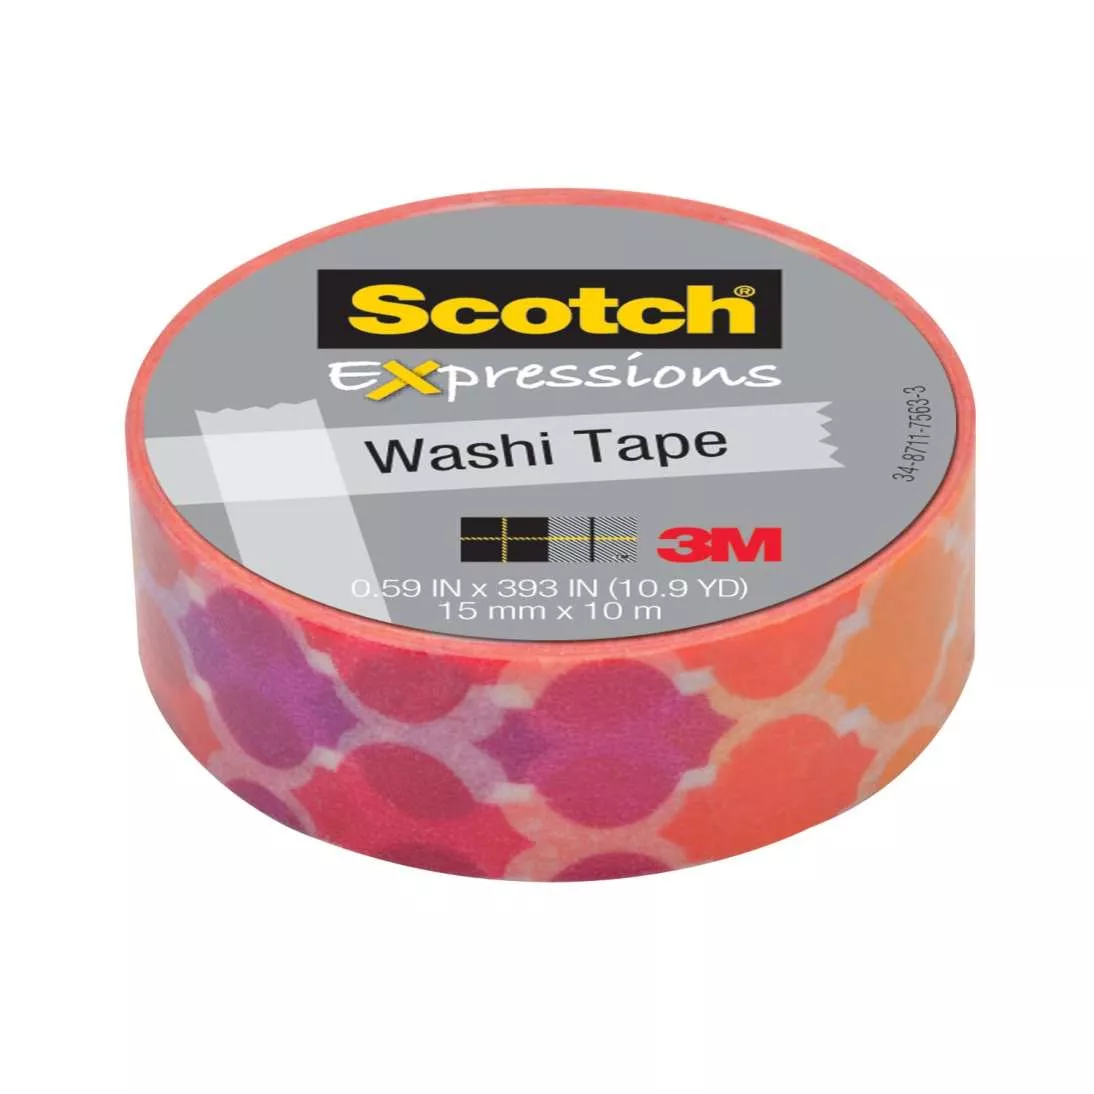 Scotch® Expressions Washi Tape C314-P19, 0.59 in x 393 in (15 mm x 10 m)
Quatrefoil Sunset